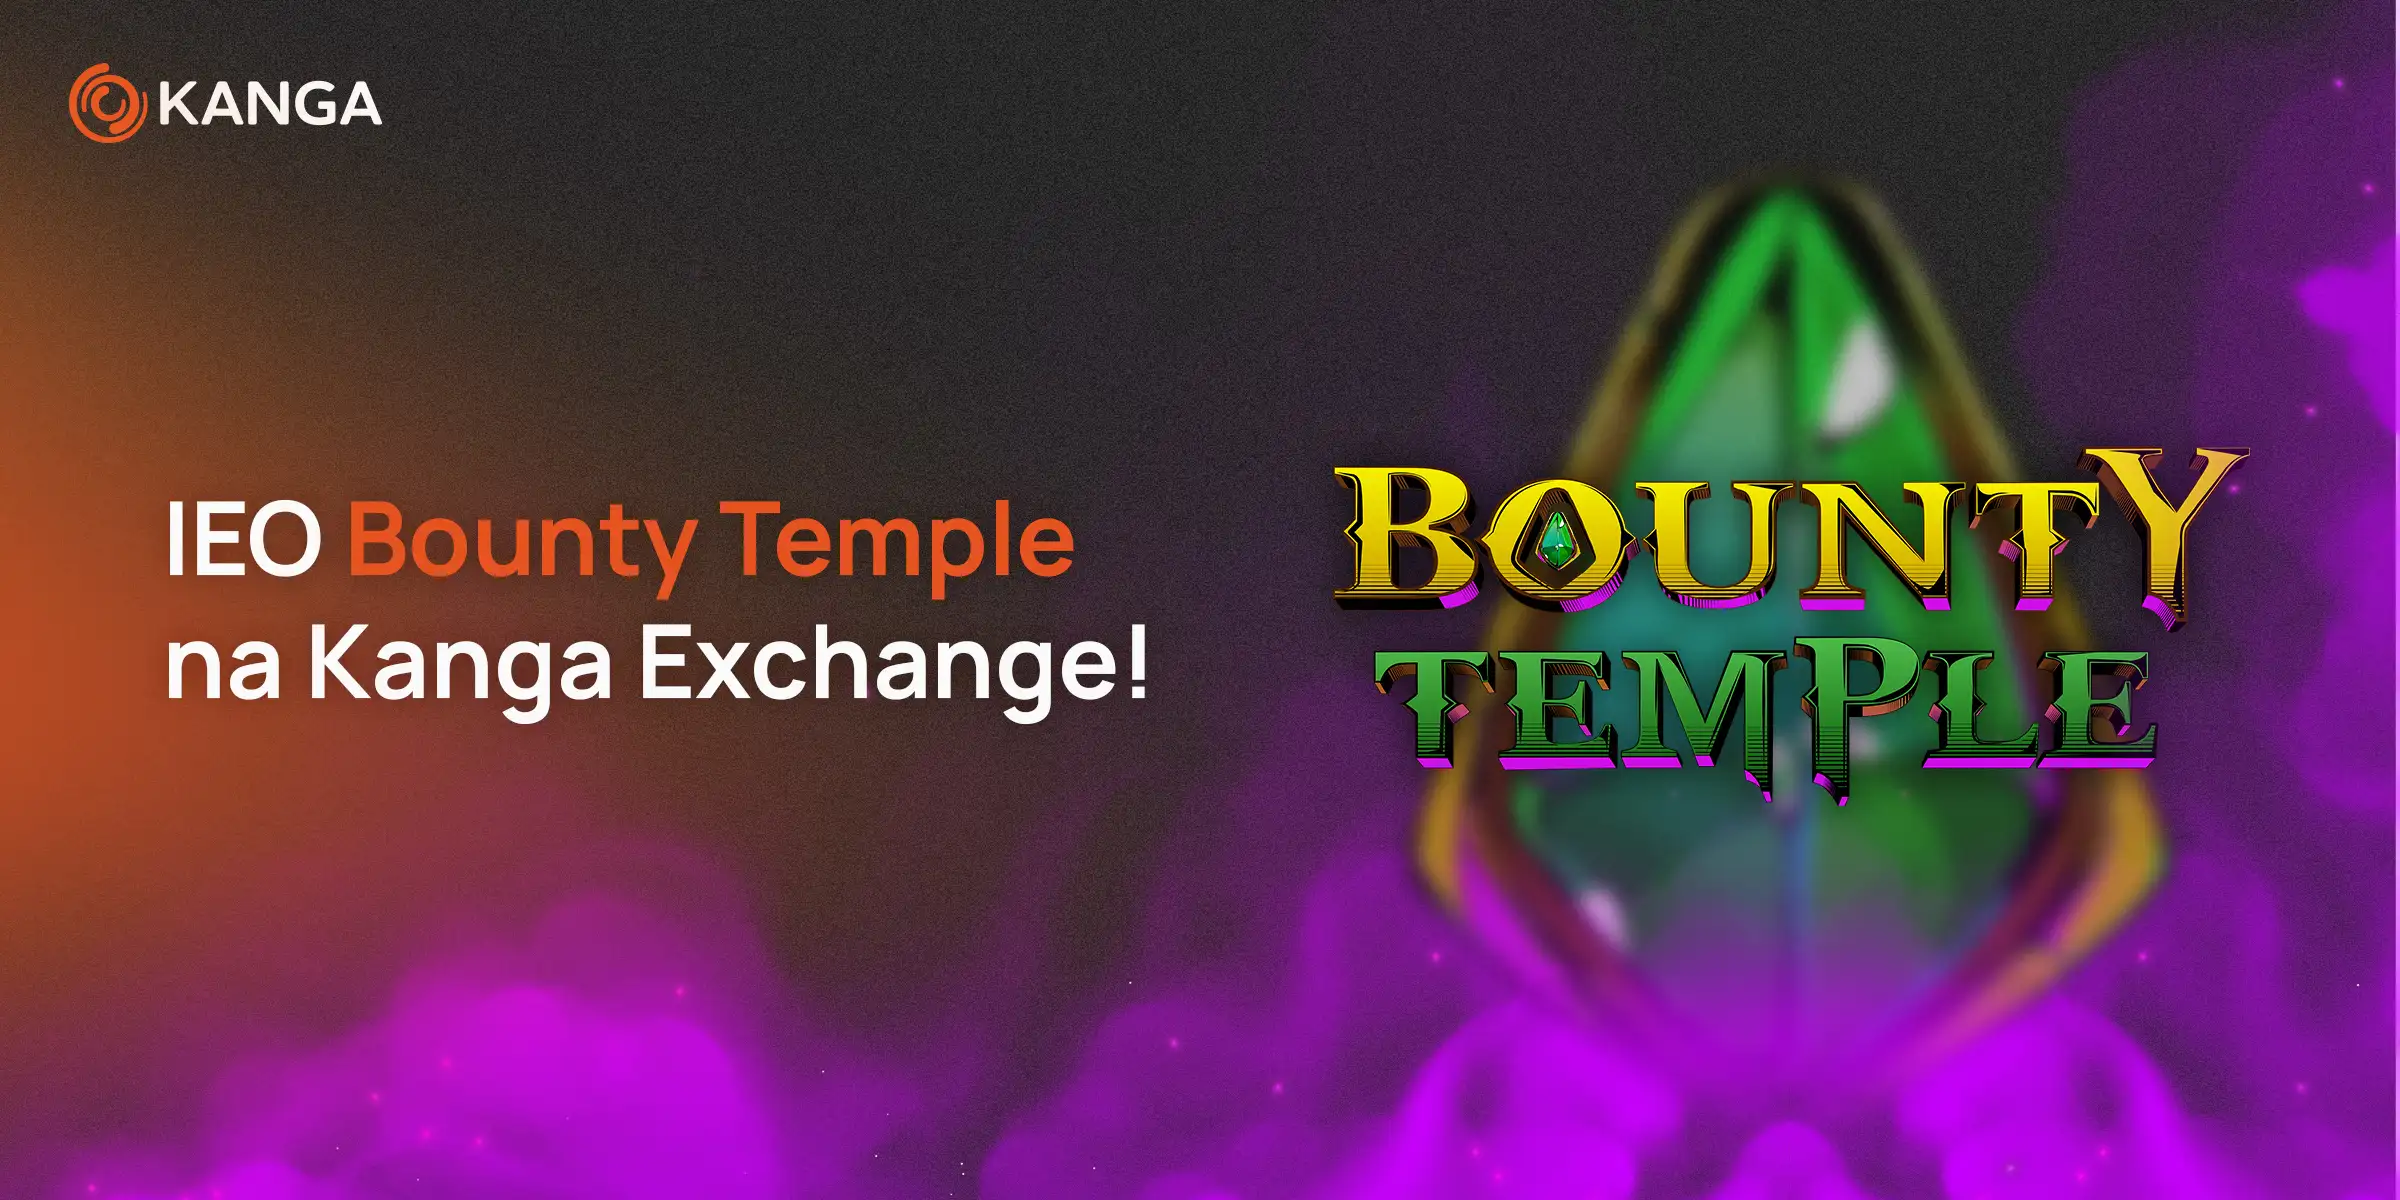 Nowe IEO na Kandze - Bounty Temple!